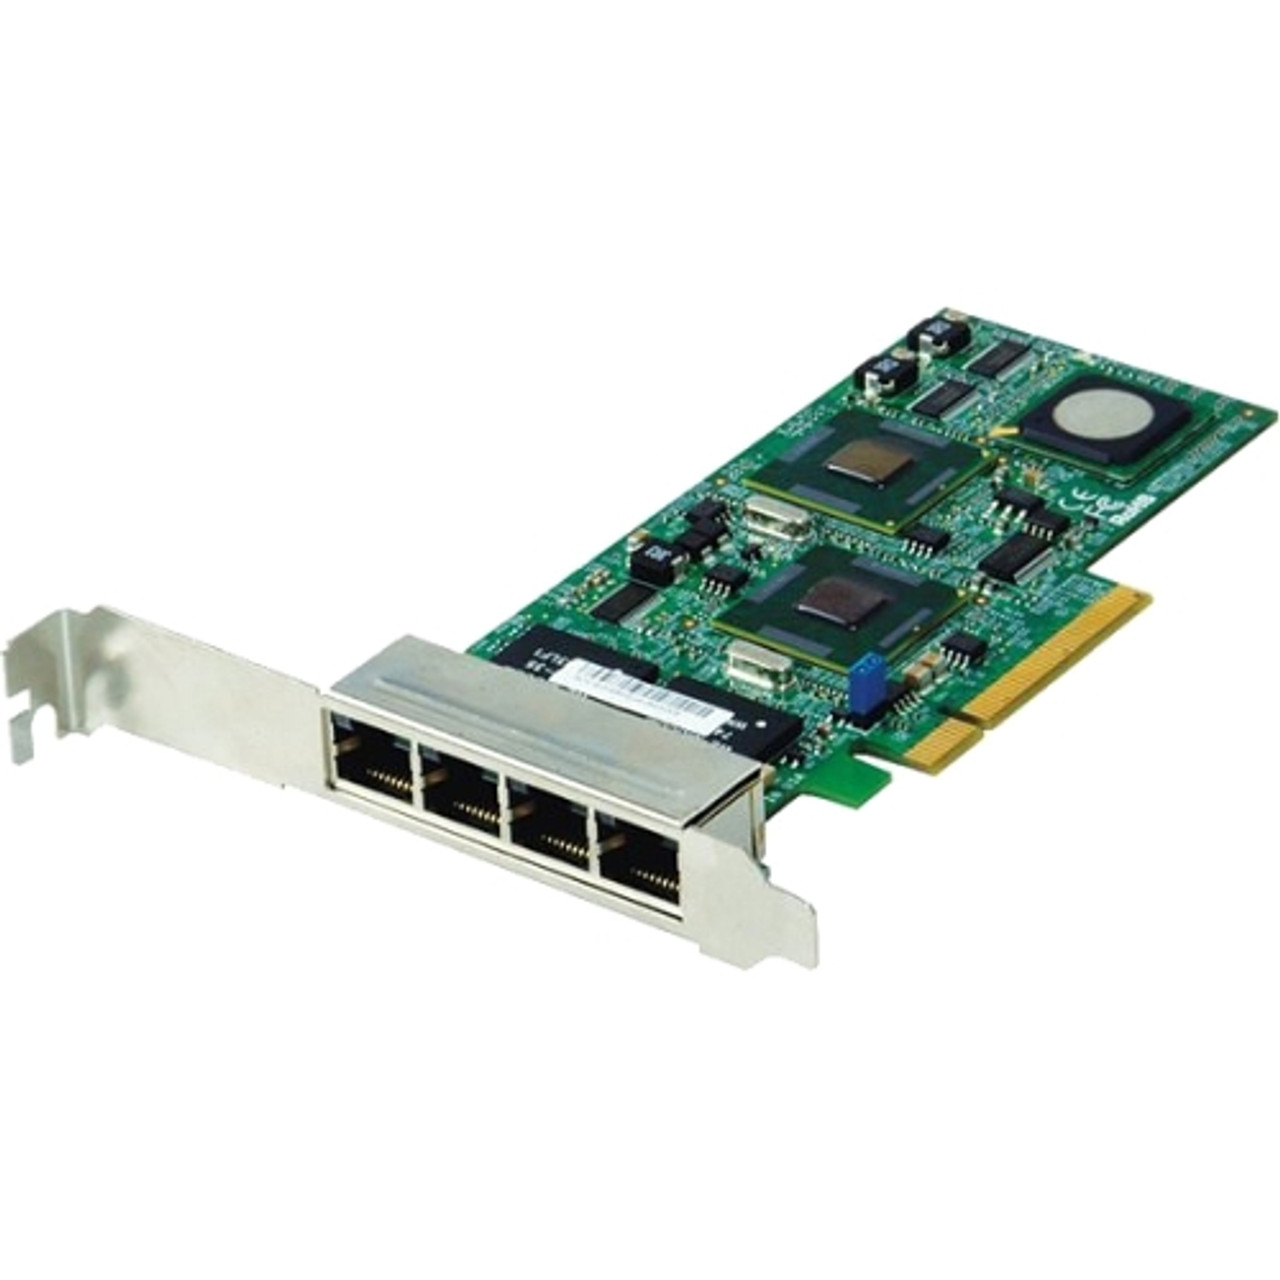 AOC-SGI4 Supermicro 4 Ports Gigabit Ethernet Card PCI Express x8 4 x RJ-45 1000Base-T Low-profile